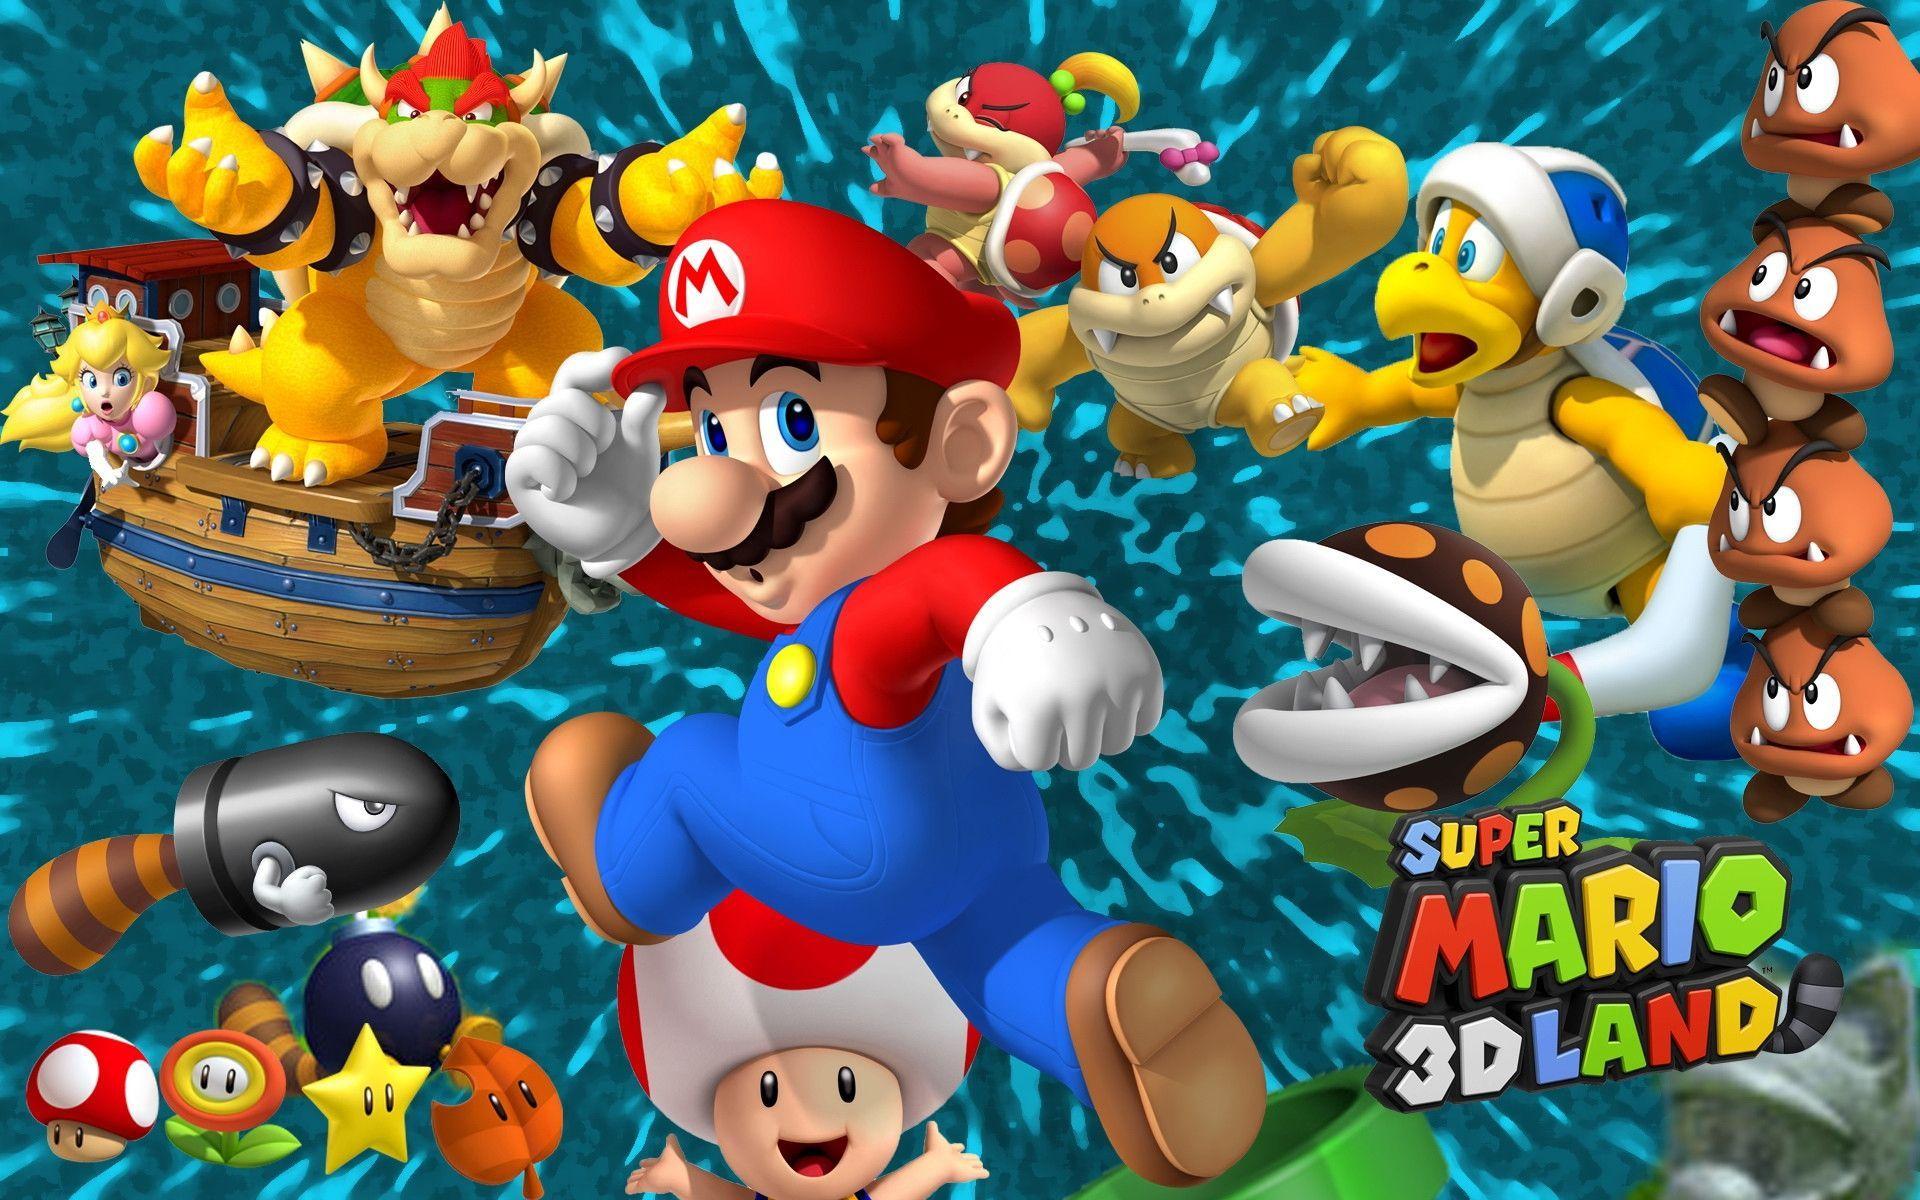 Super Mario Galaxy Games Wallpaper Free Downlo Wallpaper